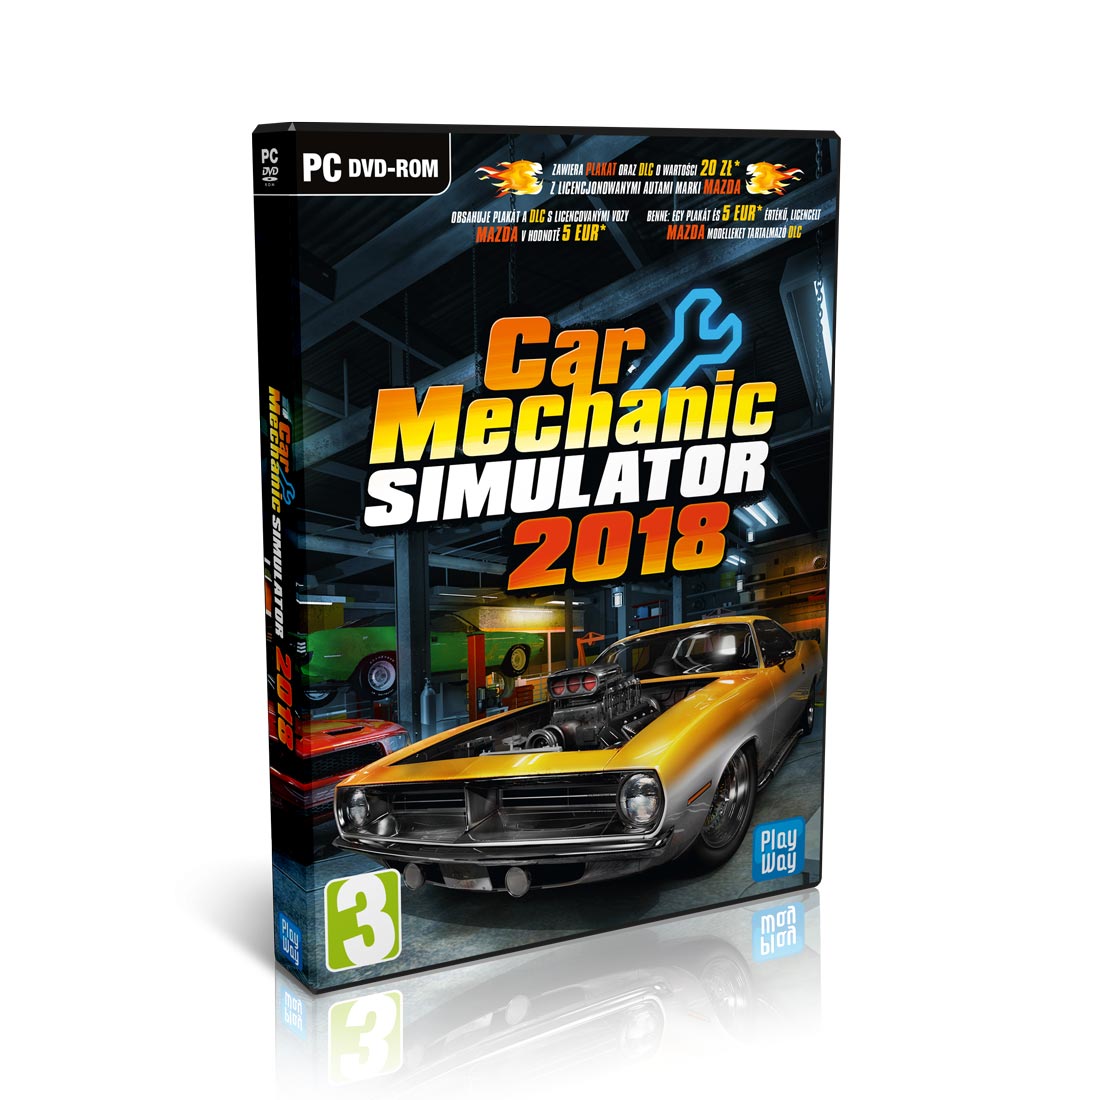 car mechanic simulator 2018 free pc download